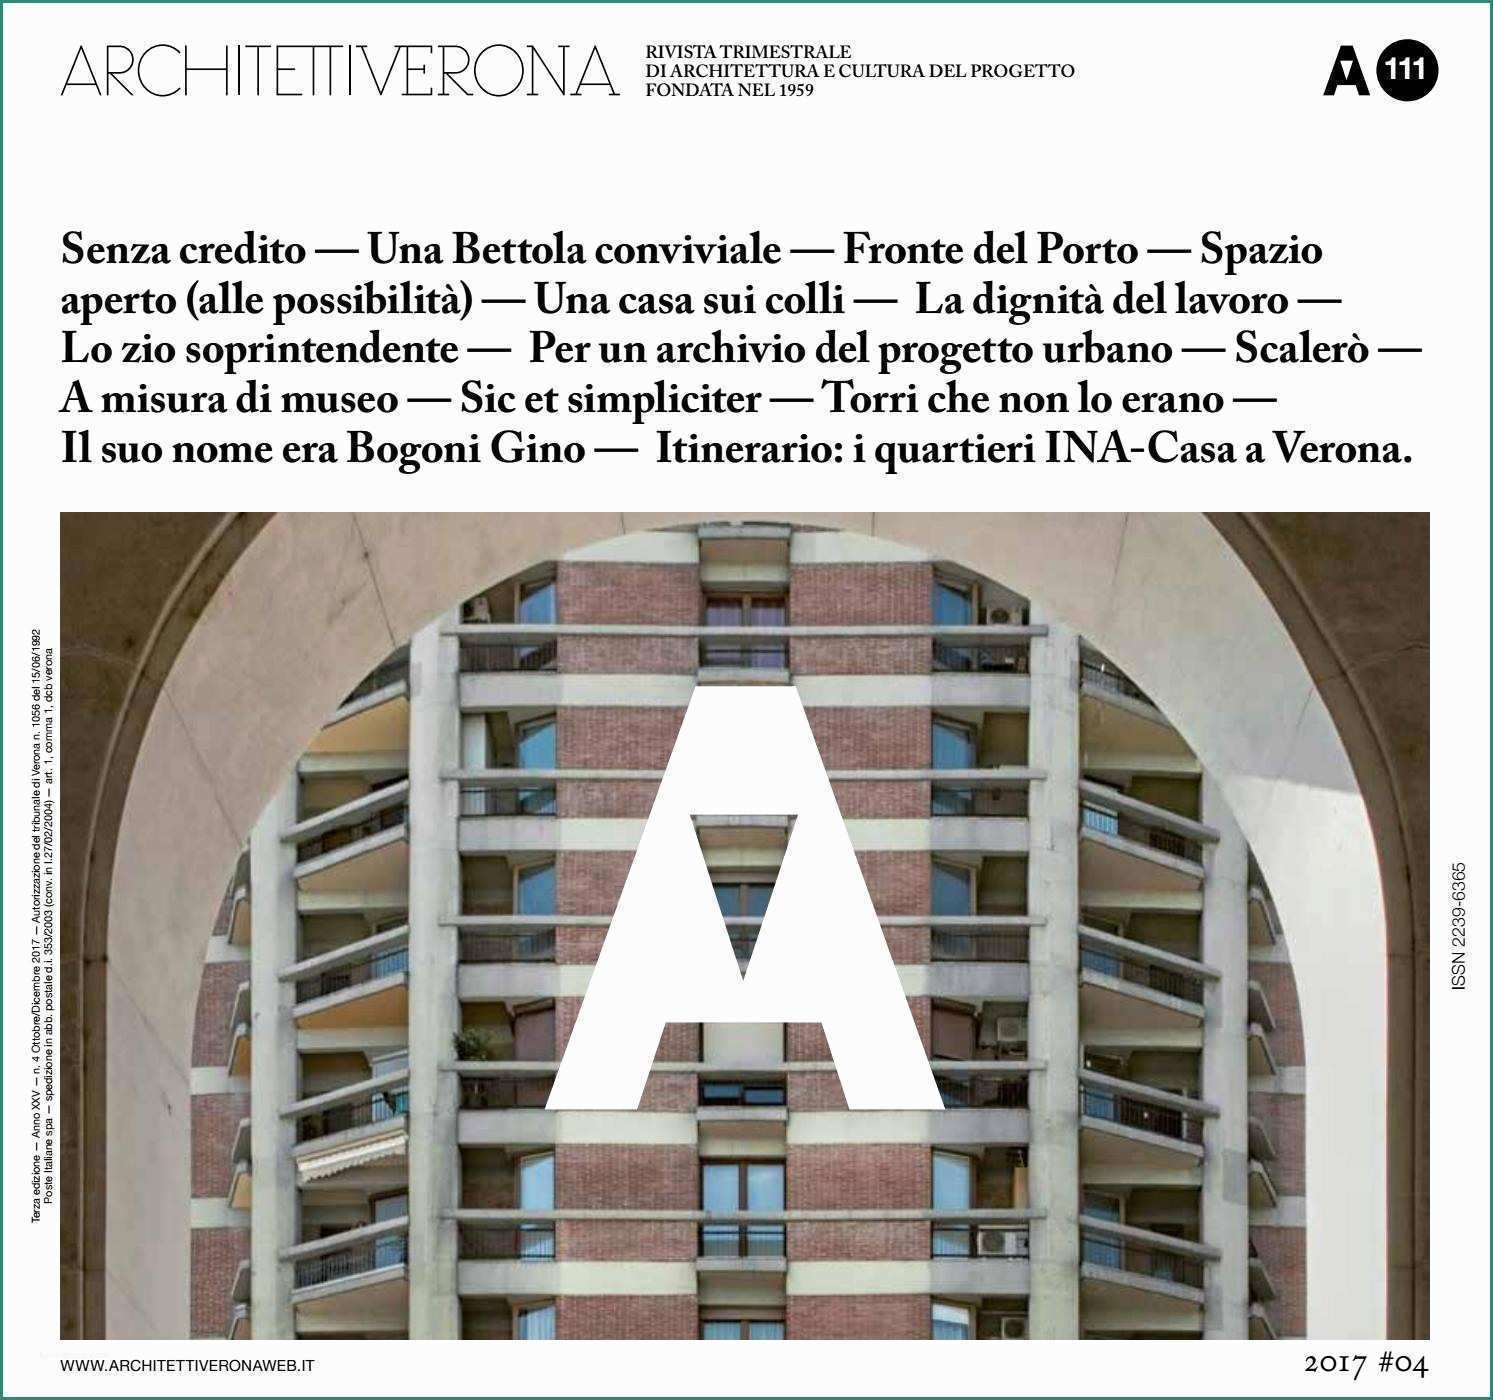 Pavimento Flottante Per Terrazzo E Architettiverona 111 by Architettiverona issuu